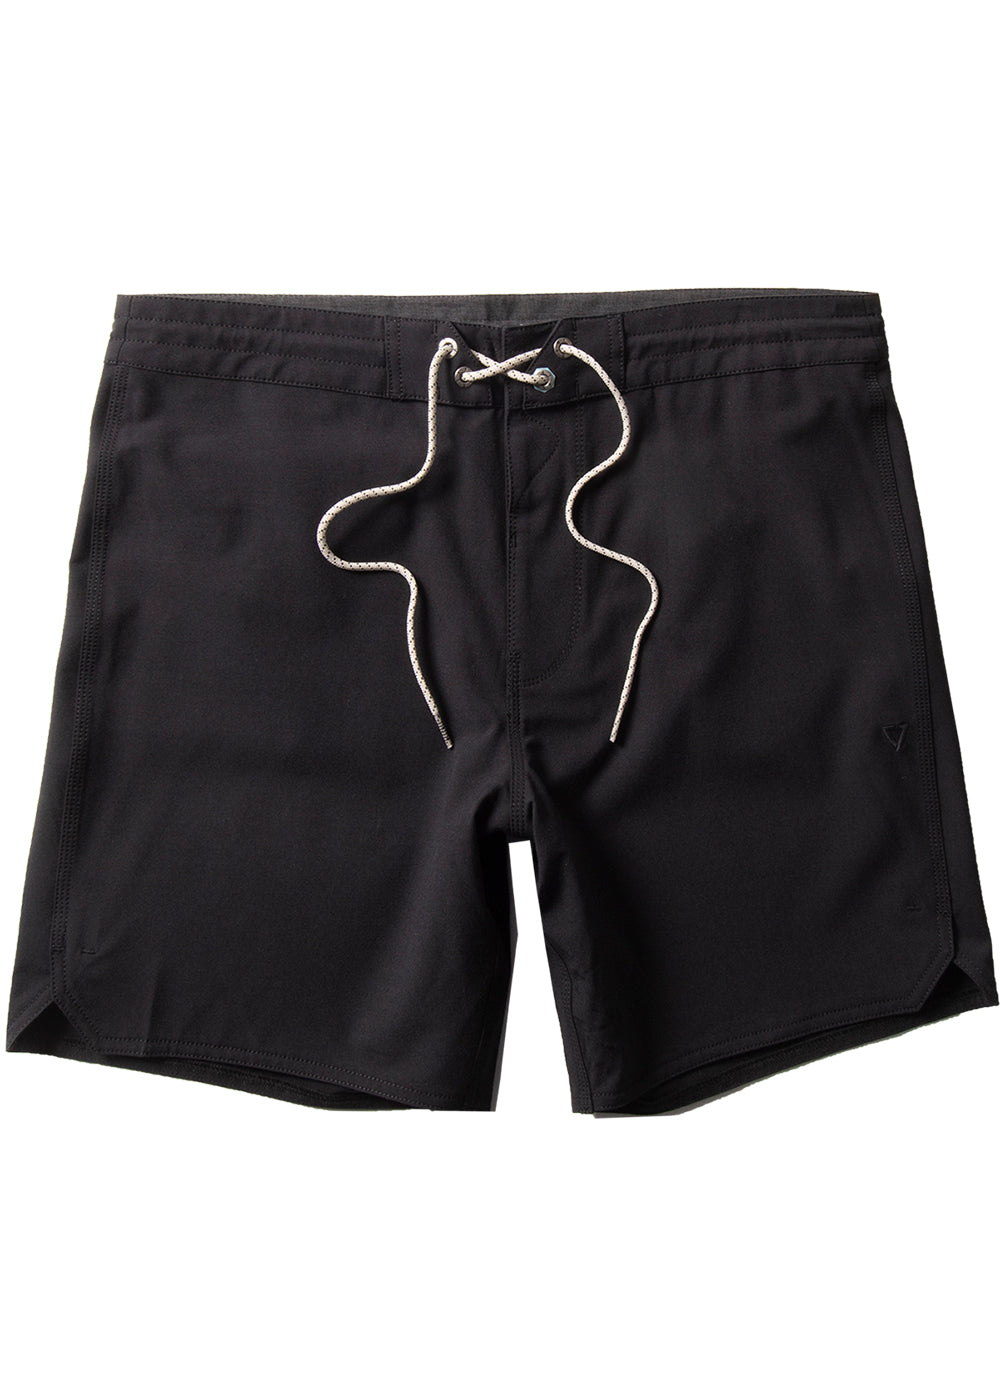 Vissla Black Short Sets 16.5" Boardshort Front View 